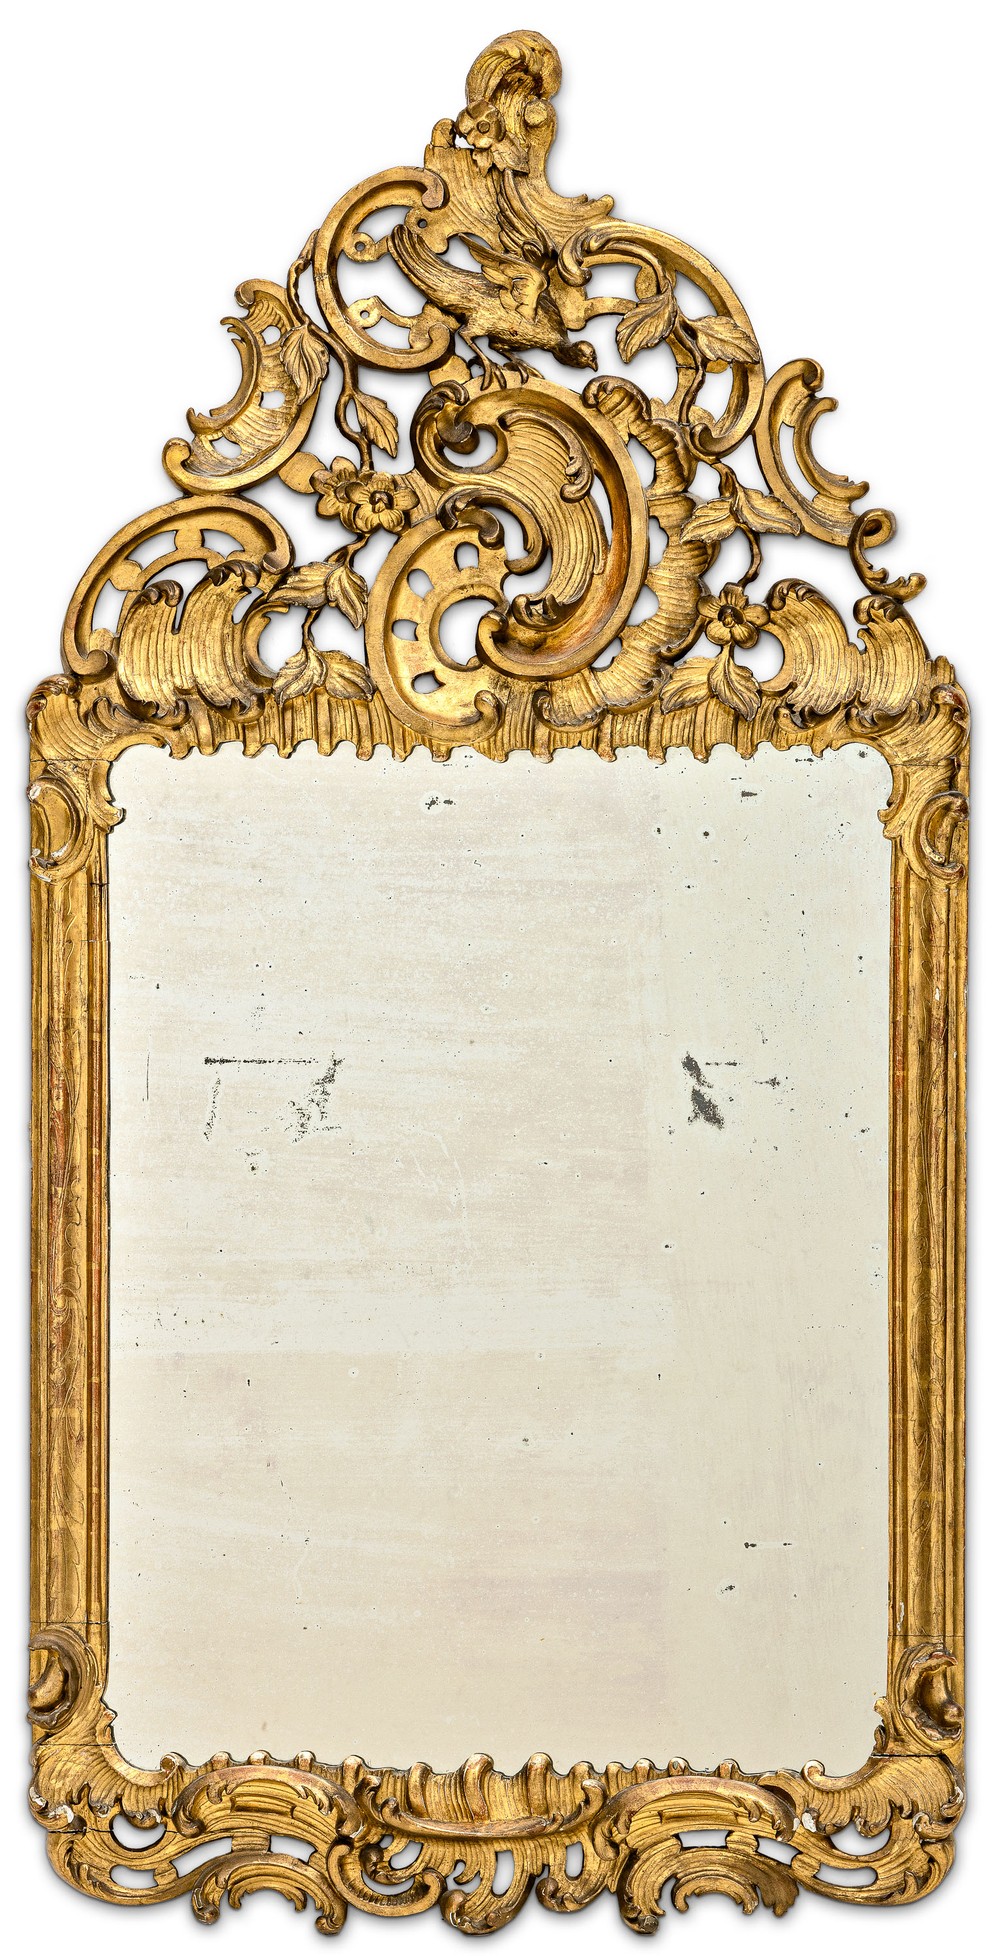 Spiegel im Barockstil mit Kranich 19. Jh.